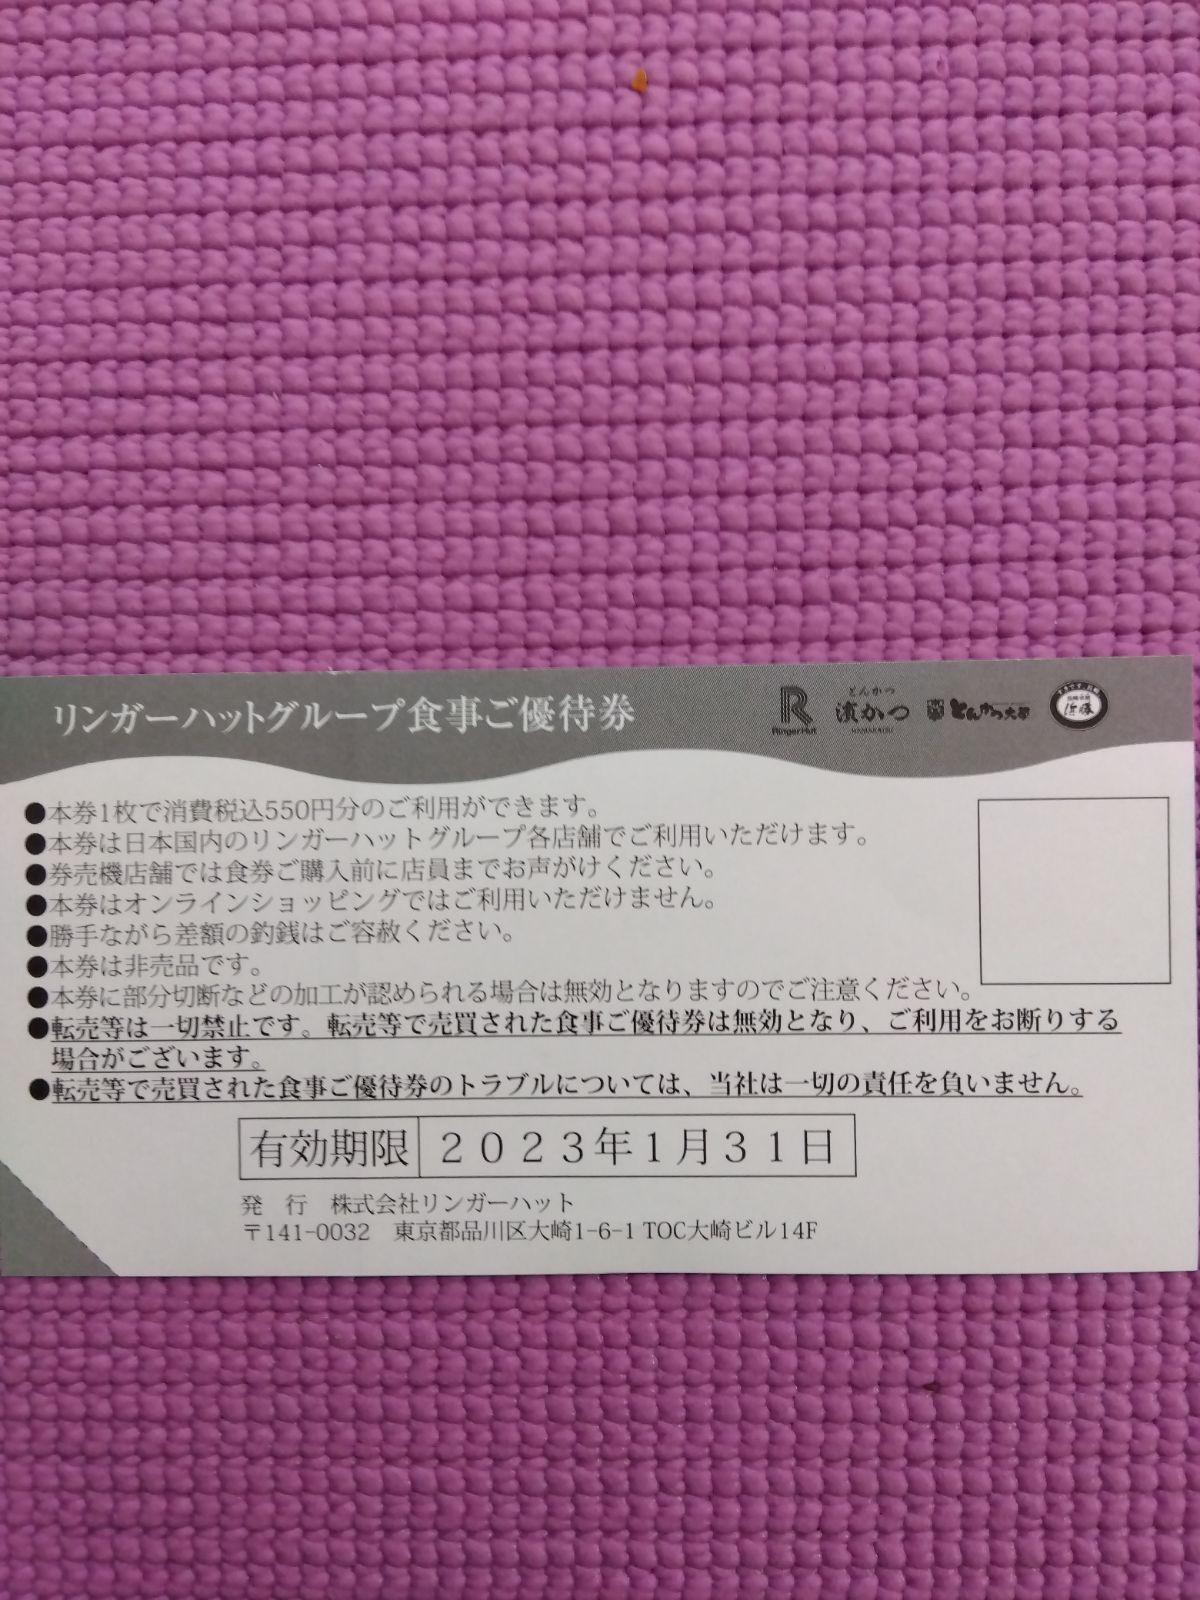 リンガーハット株主優待券1100円分 - レストラン・食事券